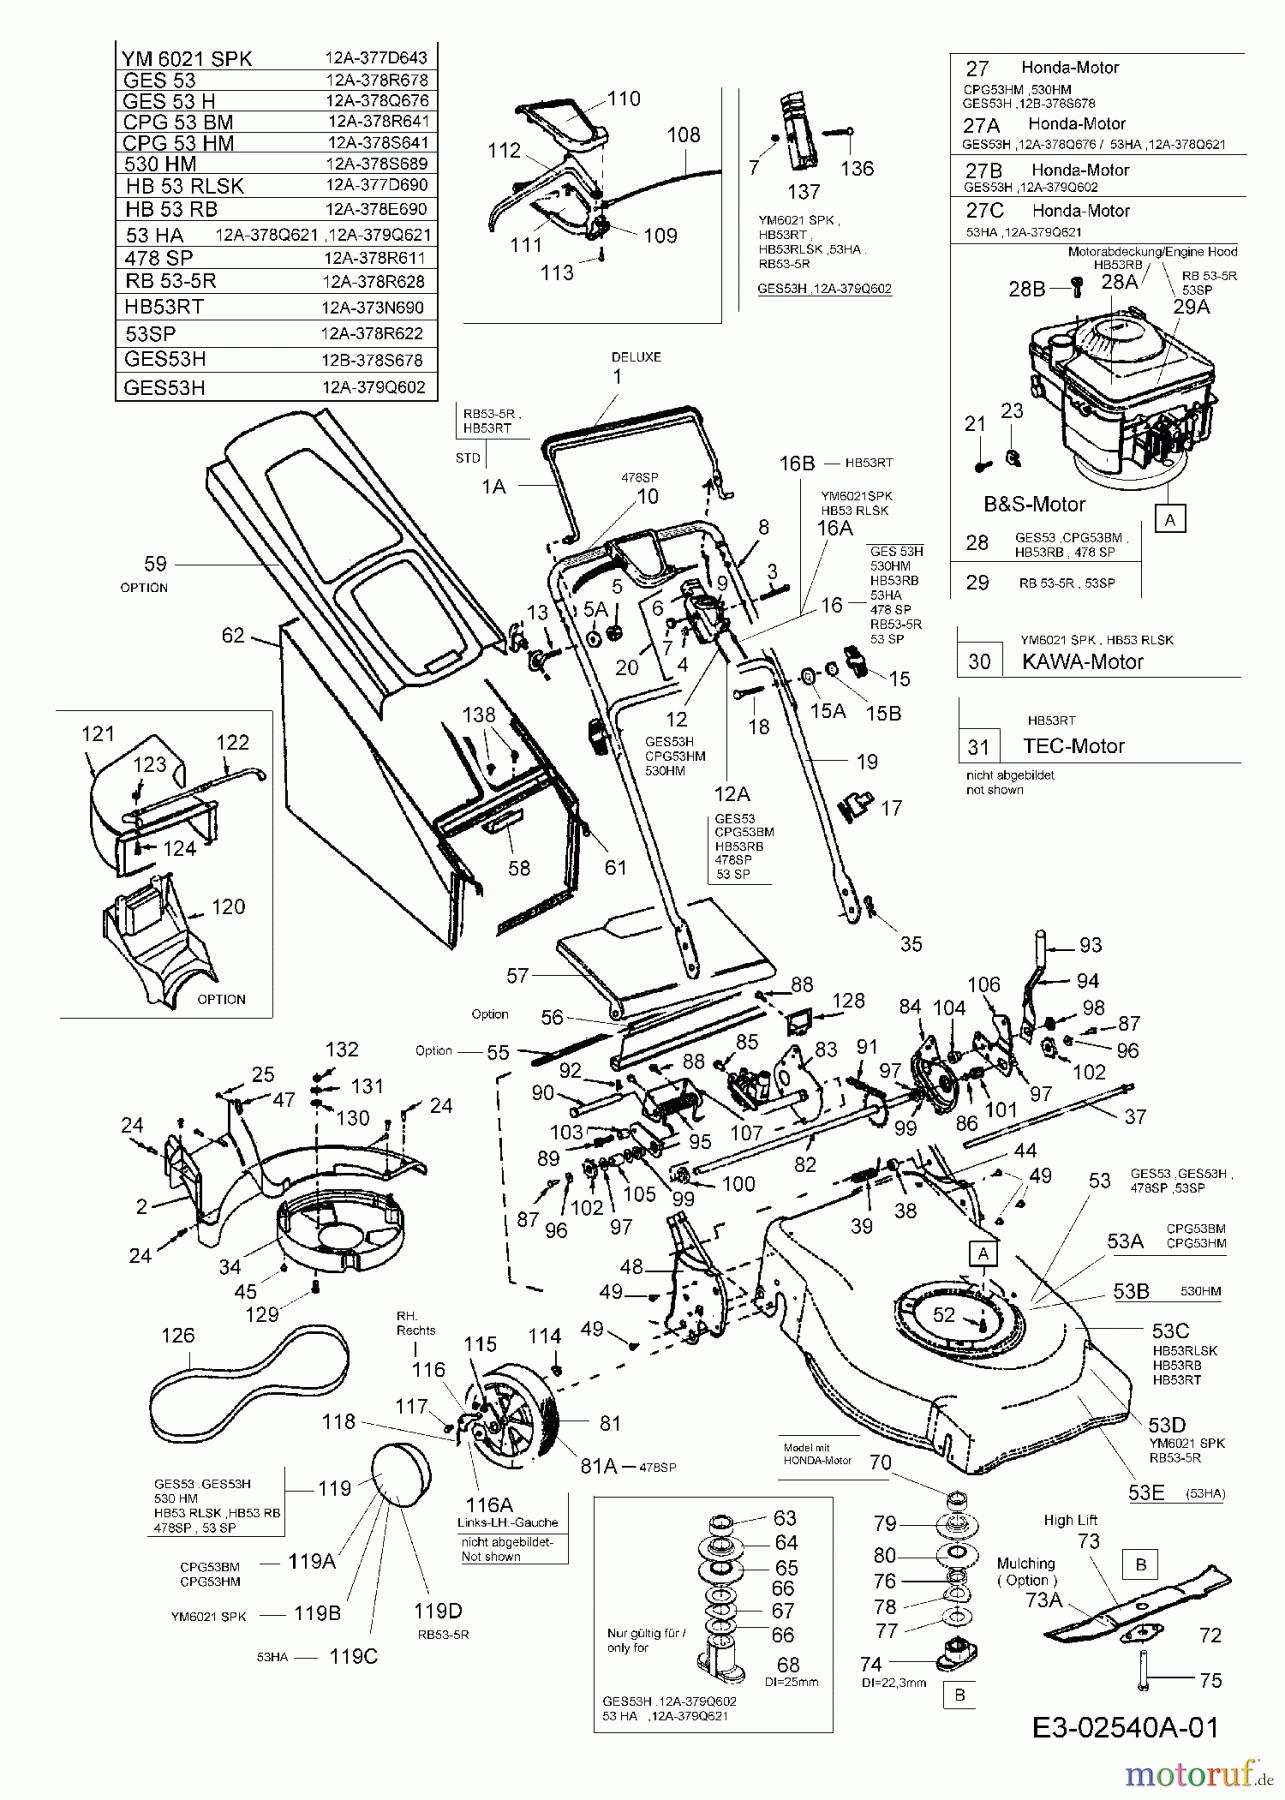  Lawnflite Motormäher mit Antrieb 478 SP 12A-378R611  (2005) Grundgerät